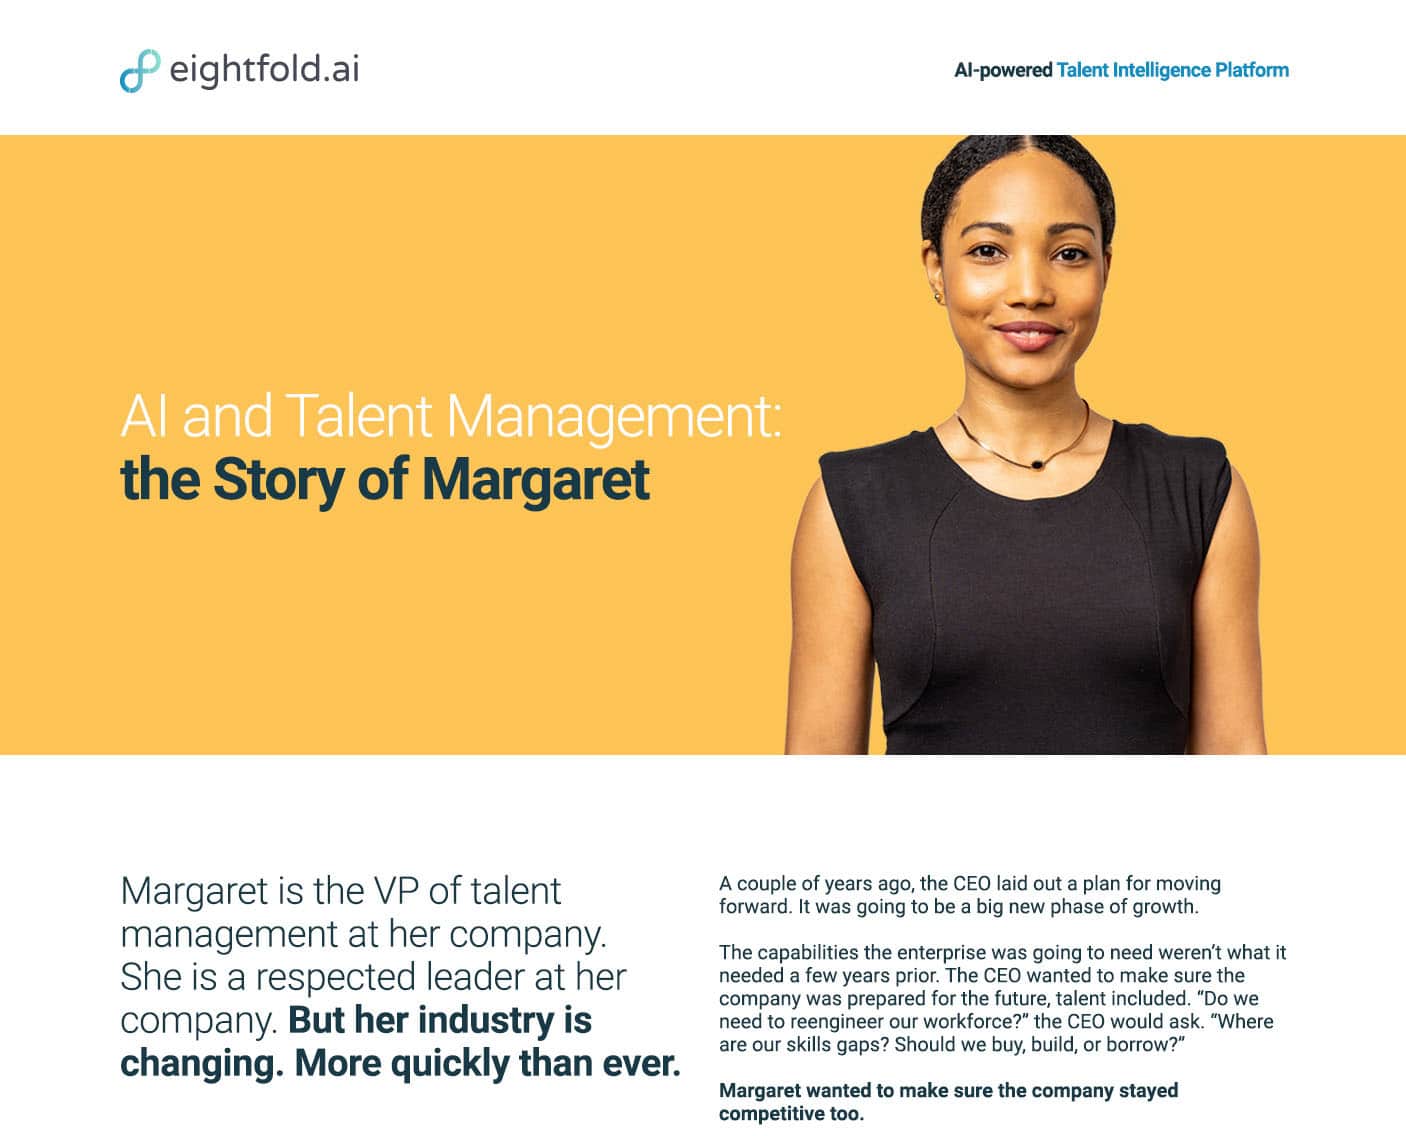 Margaret - VP of Talent Management